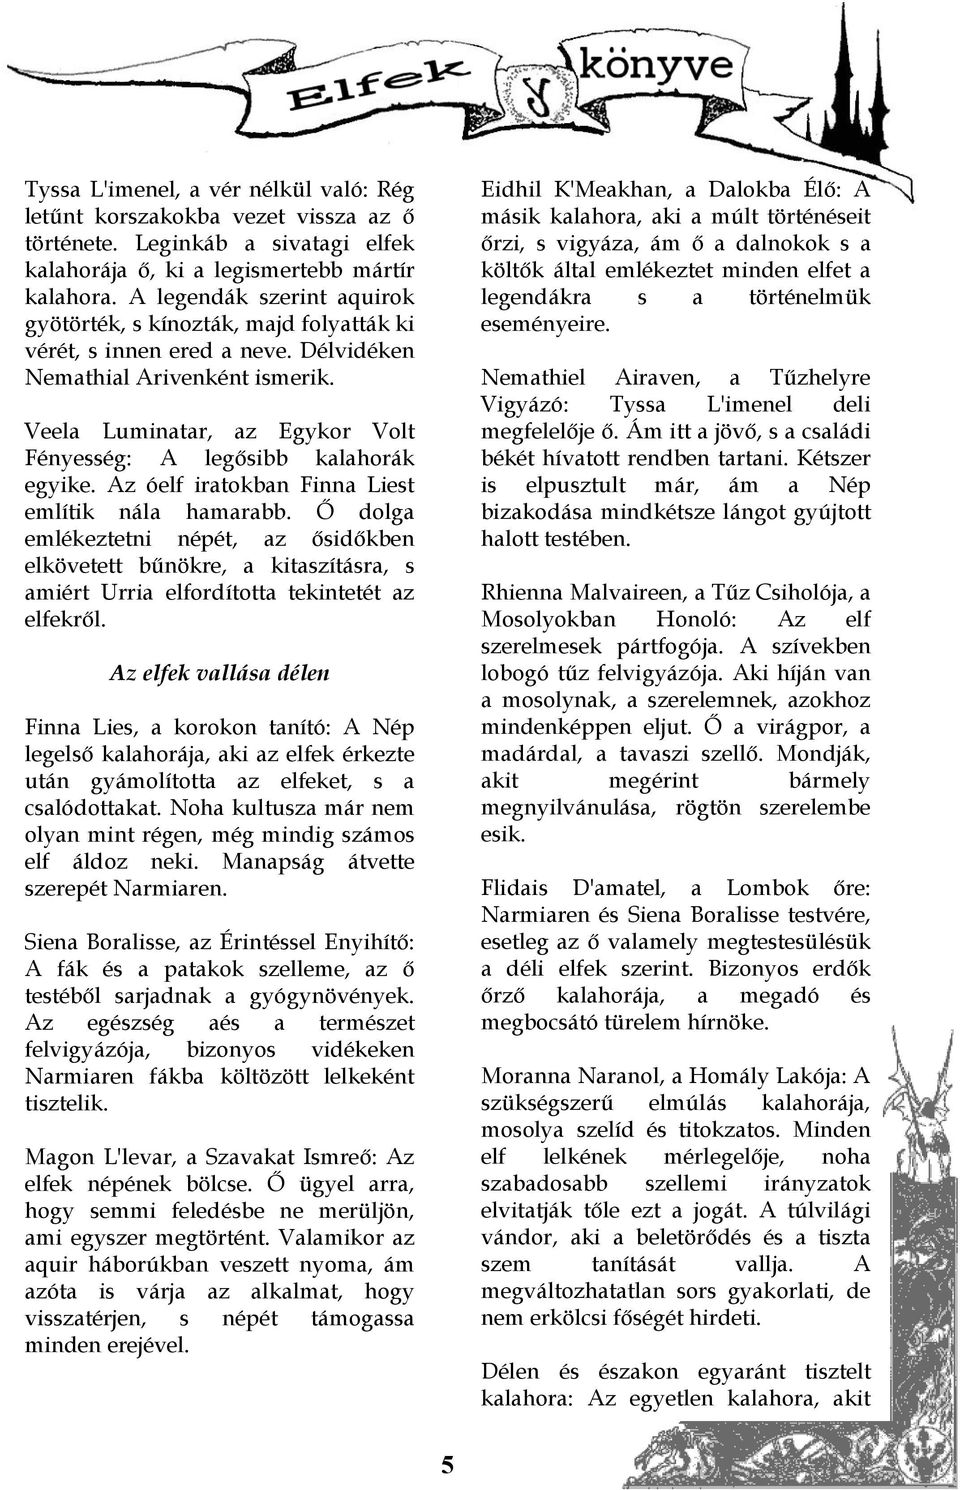 Veela Luminatar, az Egykor Volt Fényesség: A legősibb kalahorák egyike. Az óelf iratokban Finna Liest említik nála hamarabb.